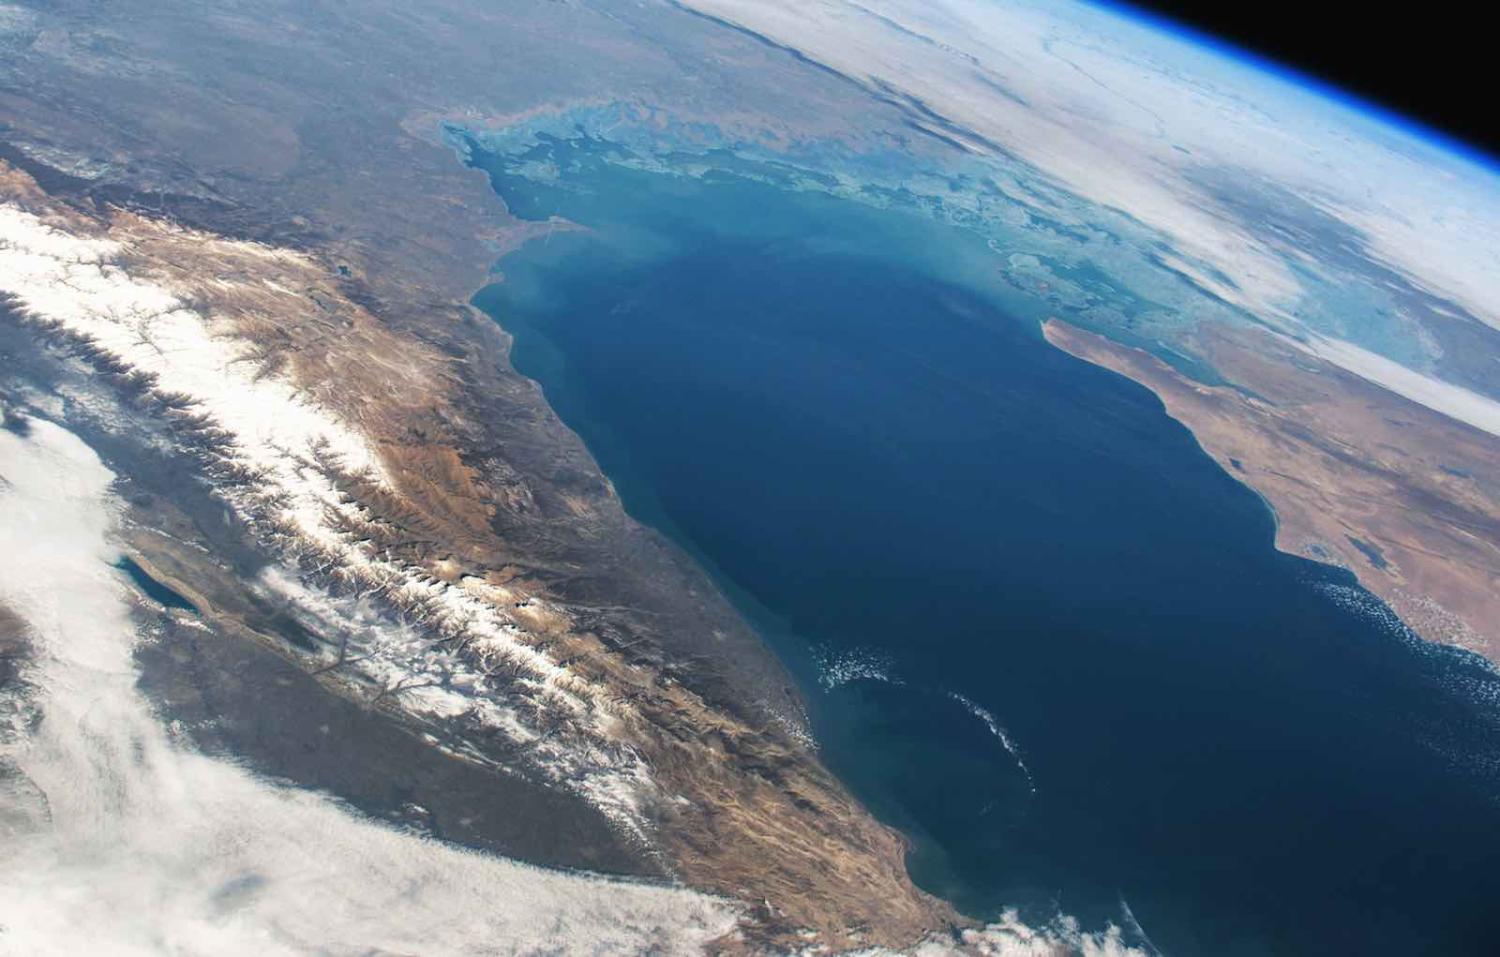 Caspian Sea from space (Photo: NASA via Stuart Rankin/Flickr)